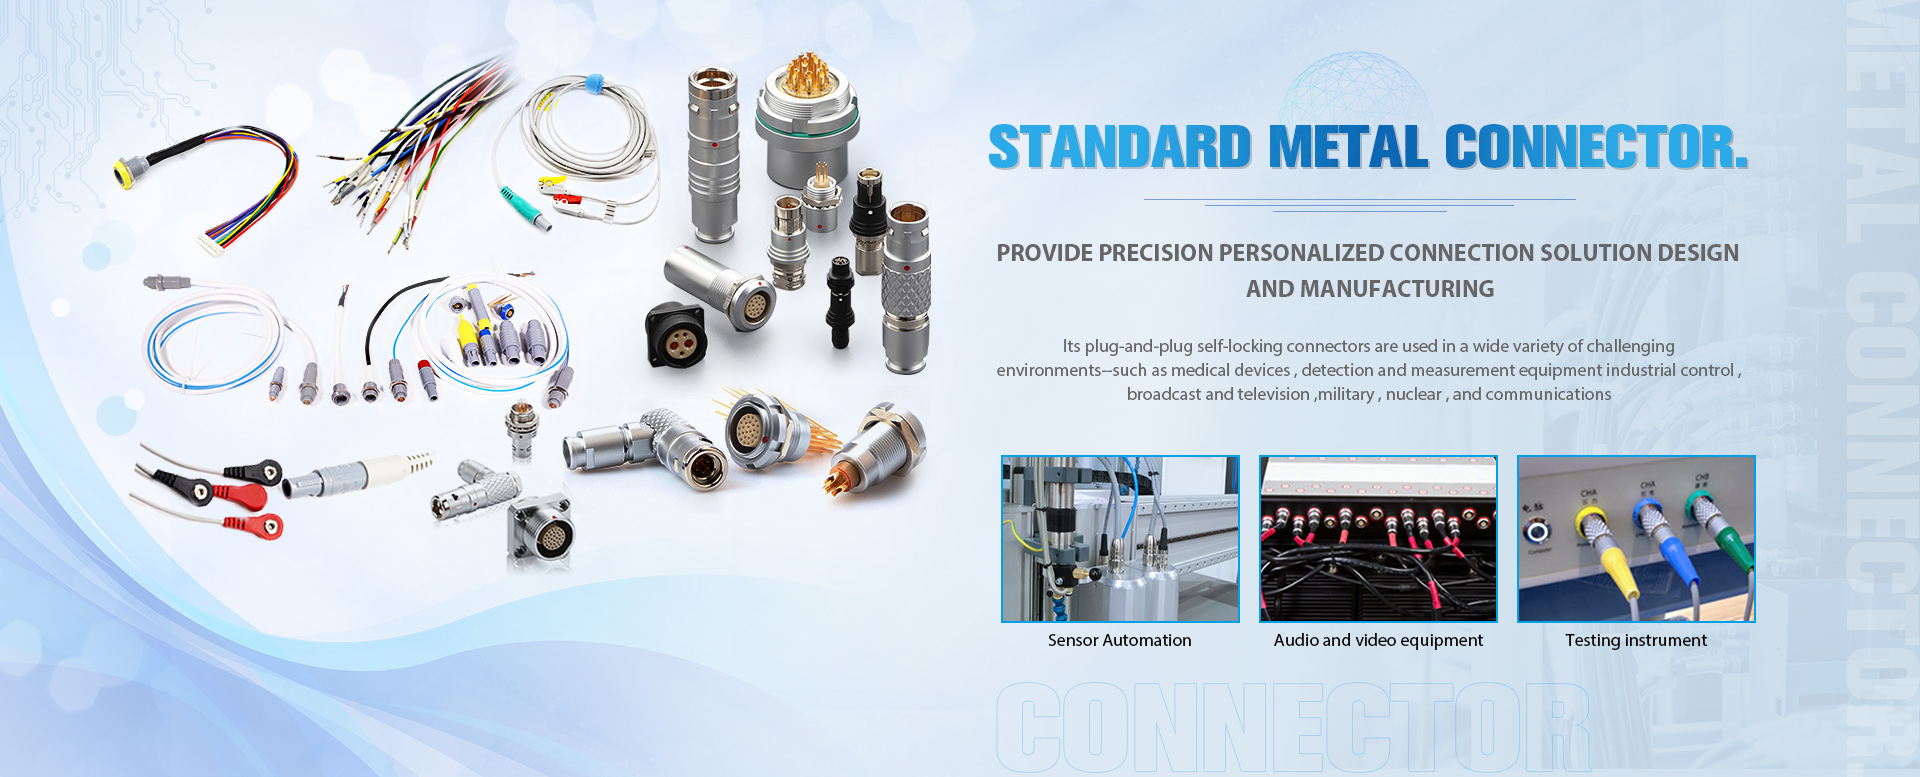 Standard Metal Connector